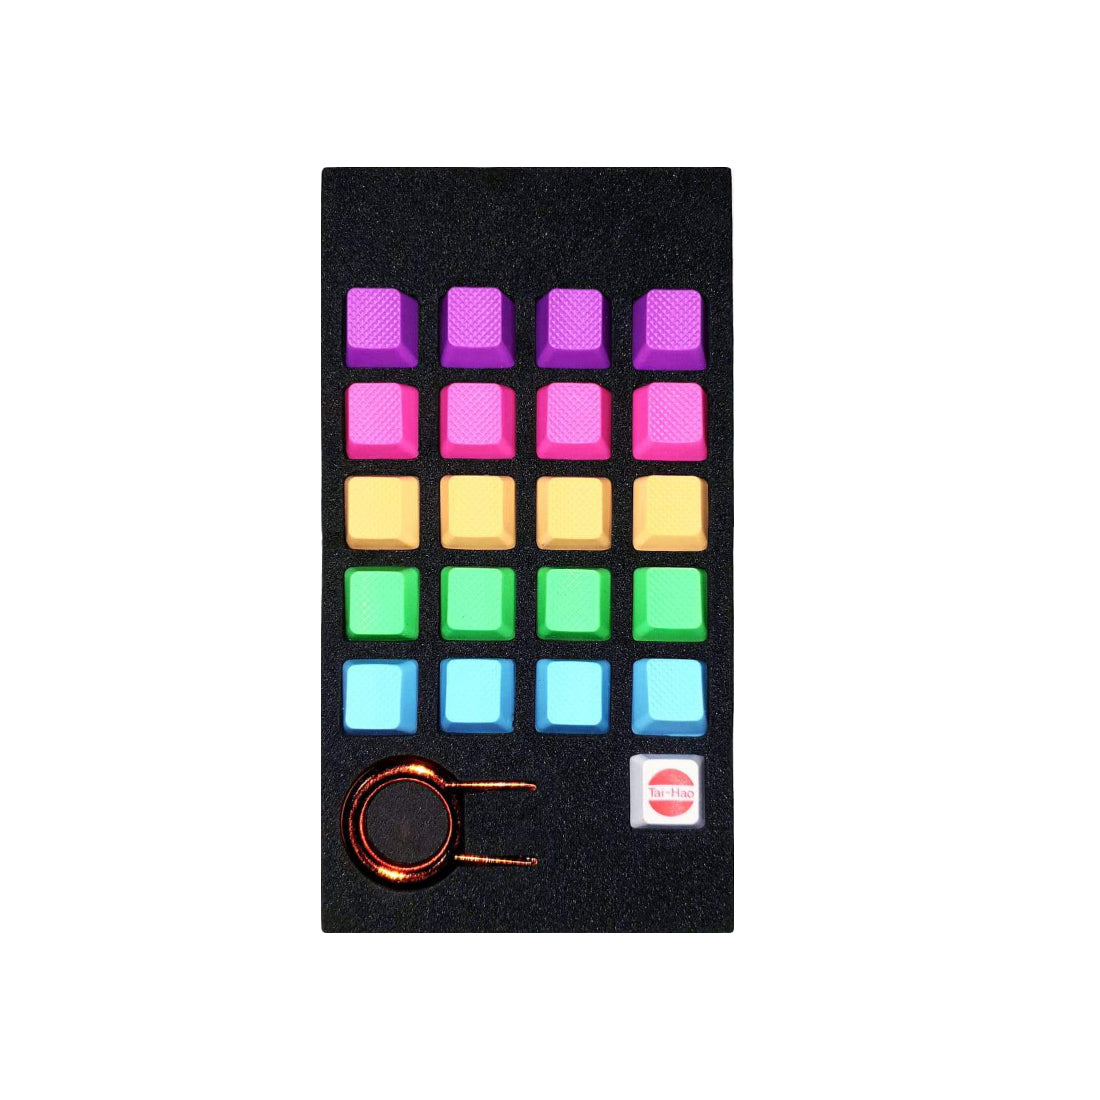 Tai-Hao Abs Double Shot Keycap-20Keys Tpr Rubber Keys Blank - Blue/Green/Pink/Orange/Purple - أكسسوار لوحة مفاتيح - Store 974 | ستور ٩٧٤